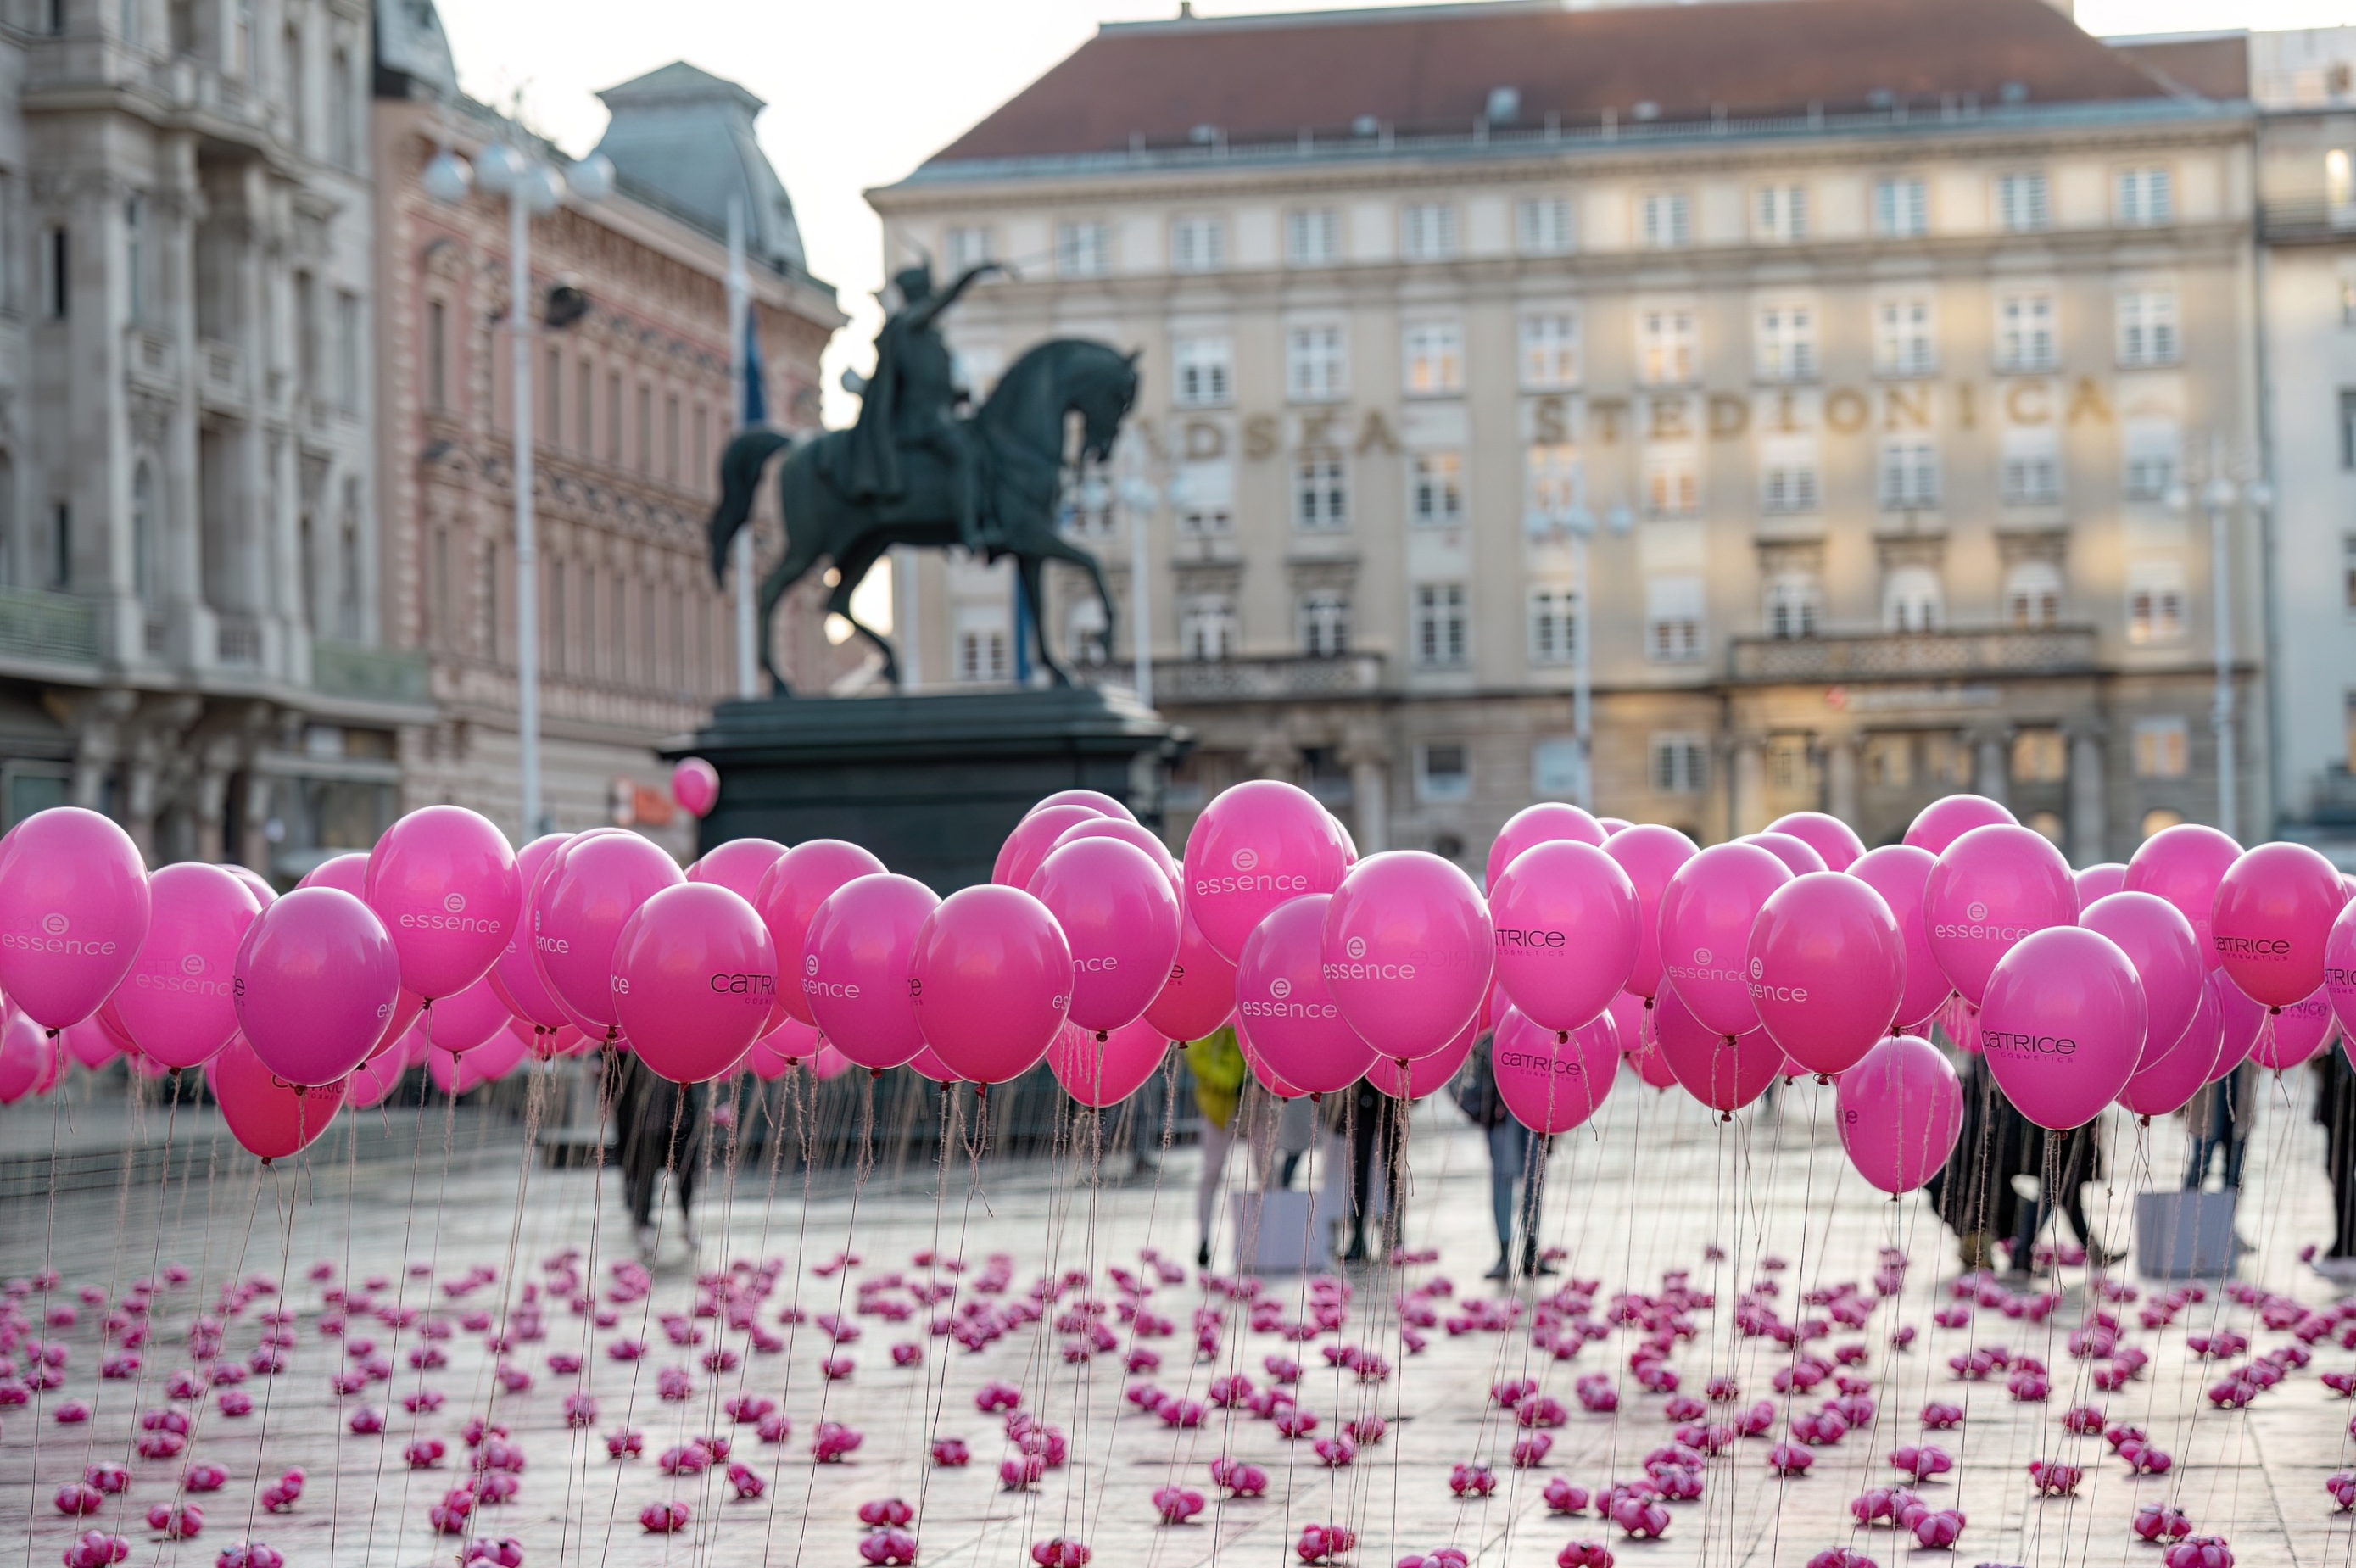 Trg bana Jelačića jutros su preplavili ružičasti baloni i to s dobrim razlogom